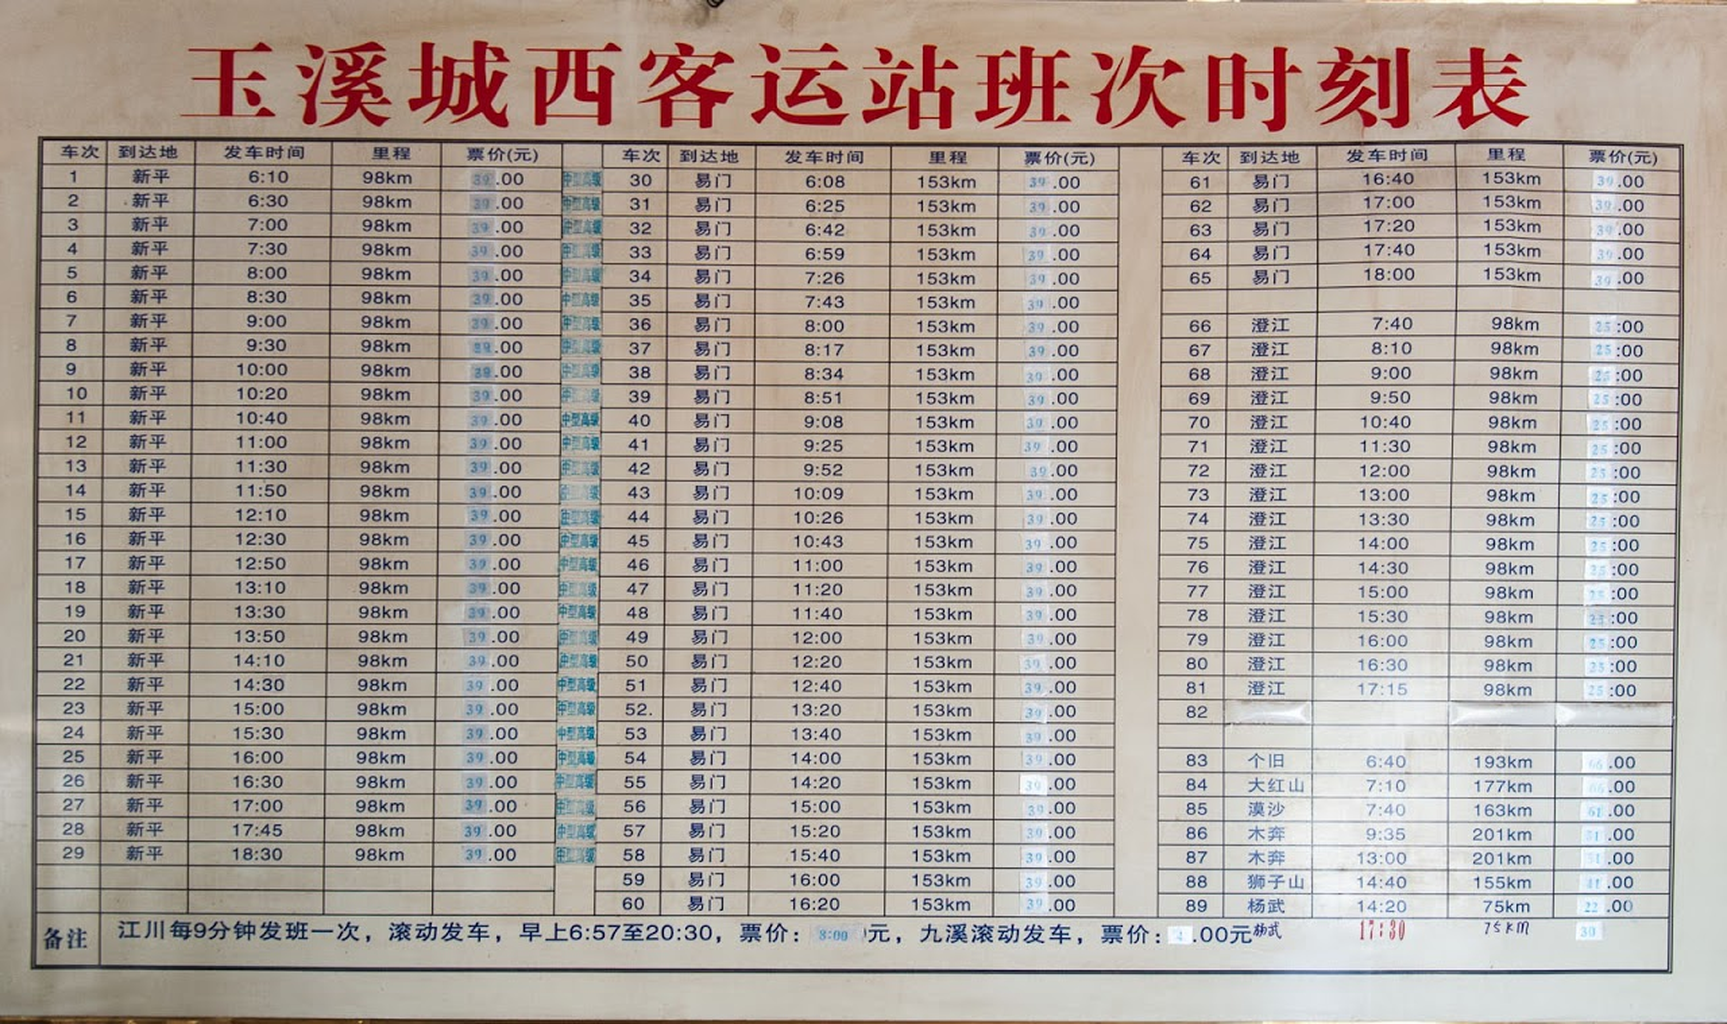 Picture: Busses to Xinping, Yimen, Jiangchuan and Chengjiang 